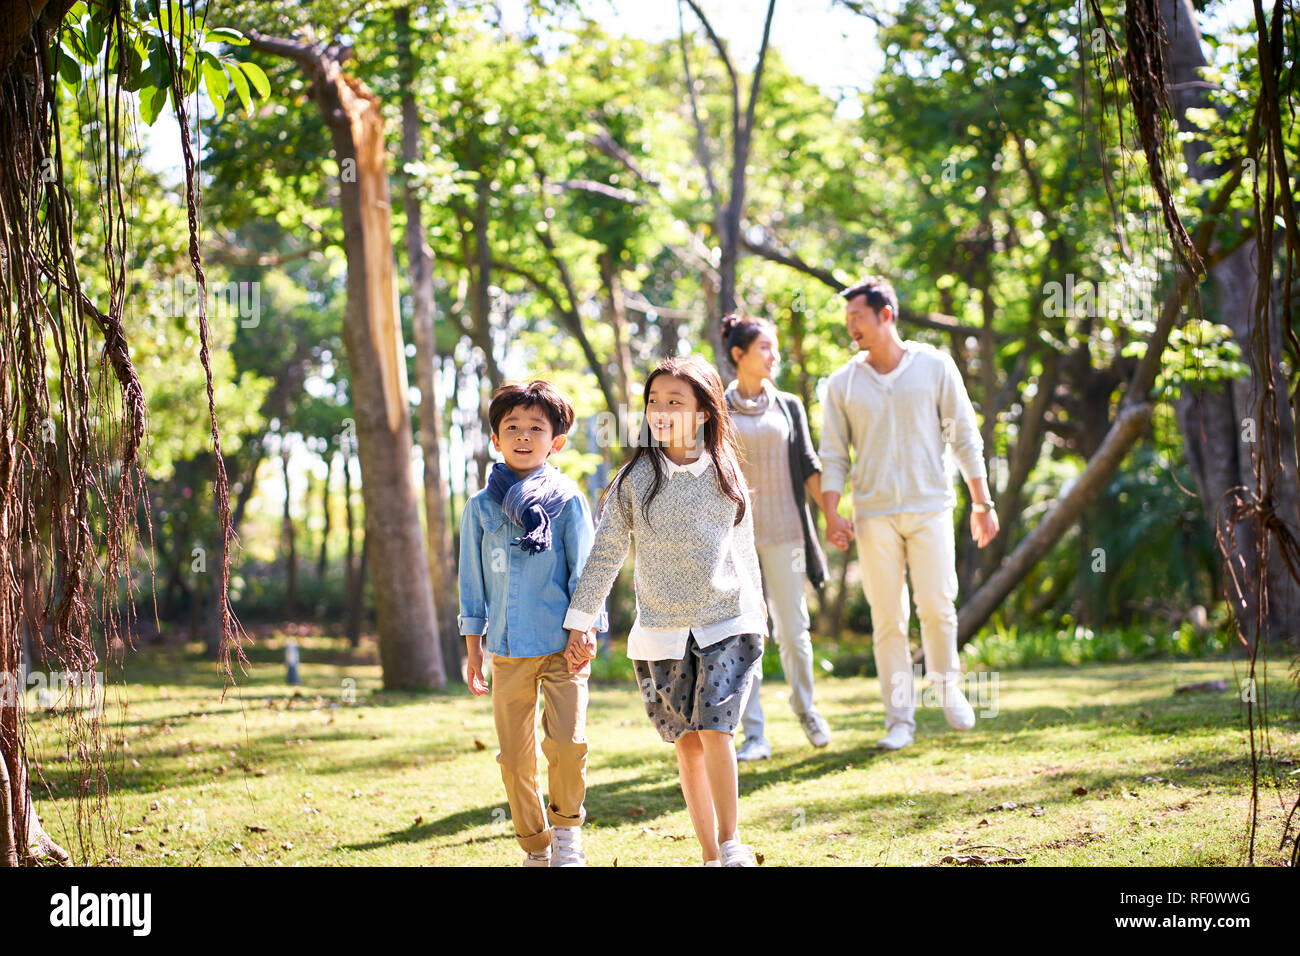 Famille avec deux enfants asiatiques relaxant de marche s'amusant dans le parc heureux et souriants. Banque D'Images